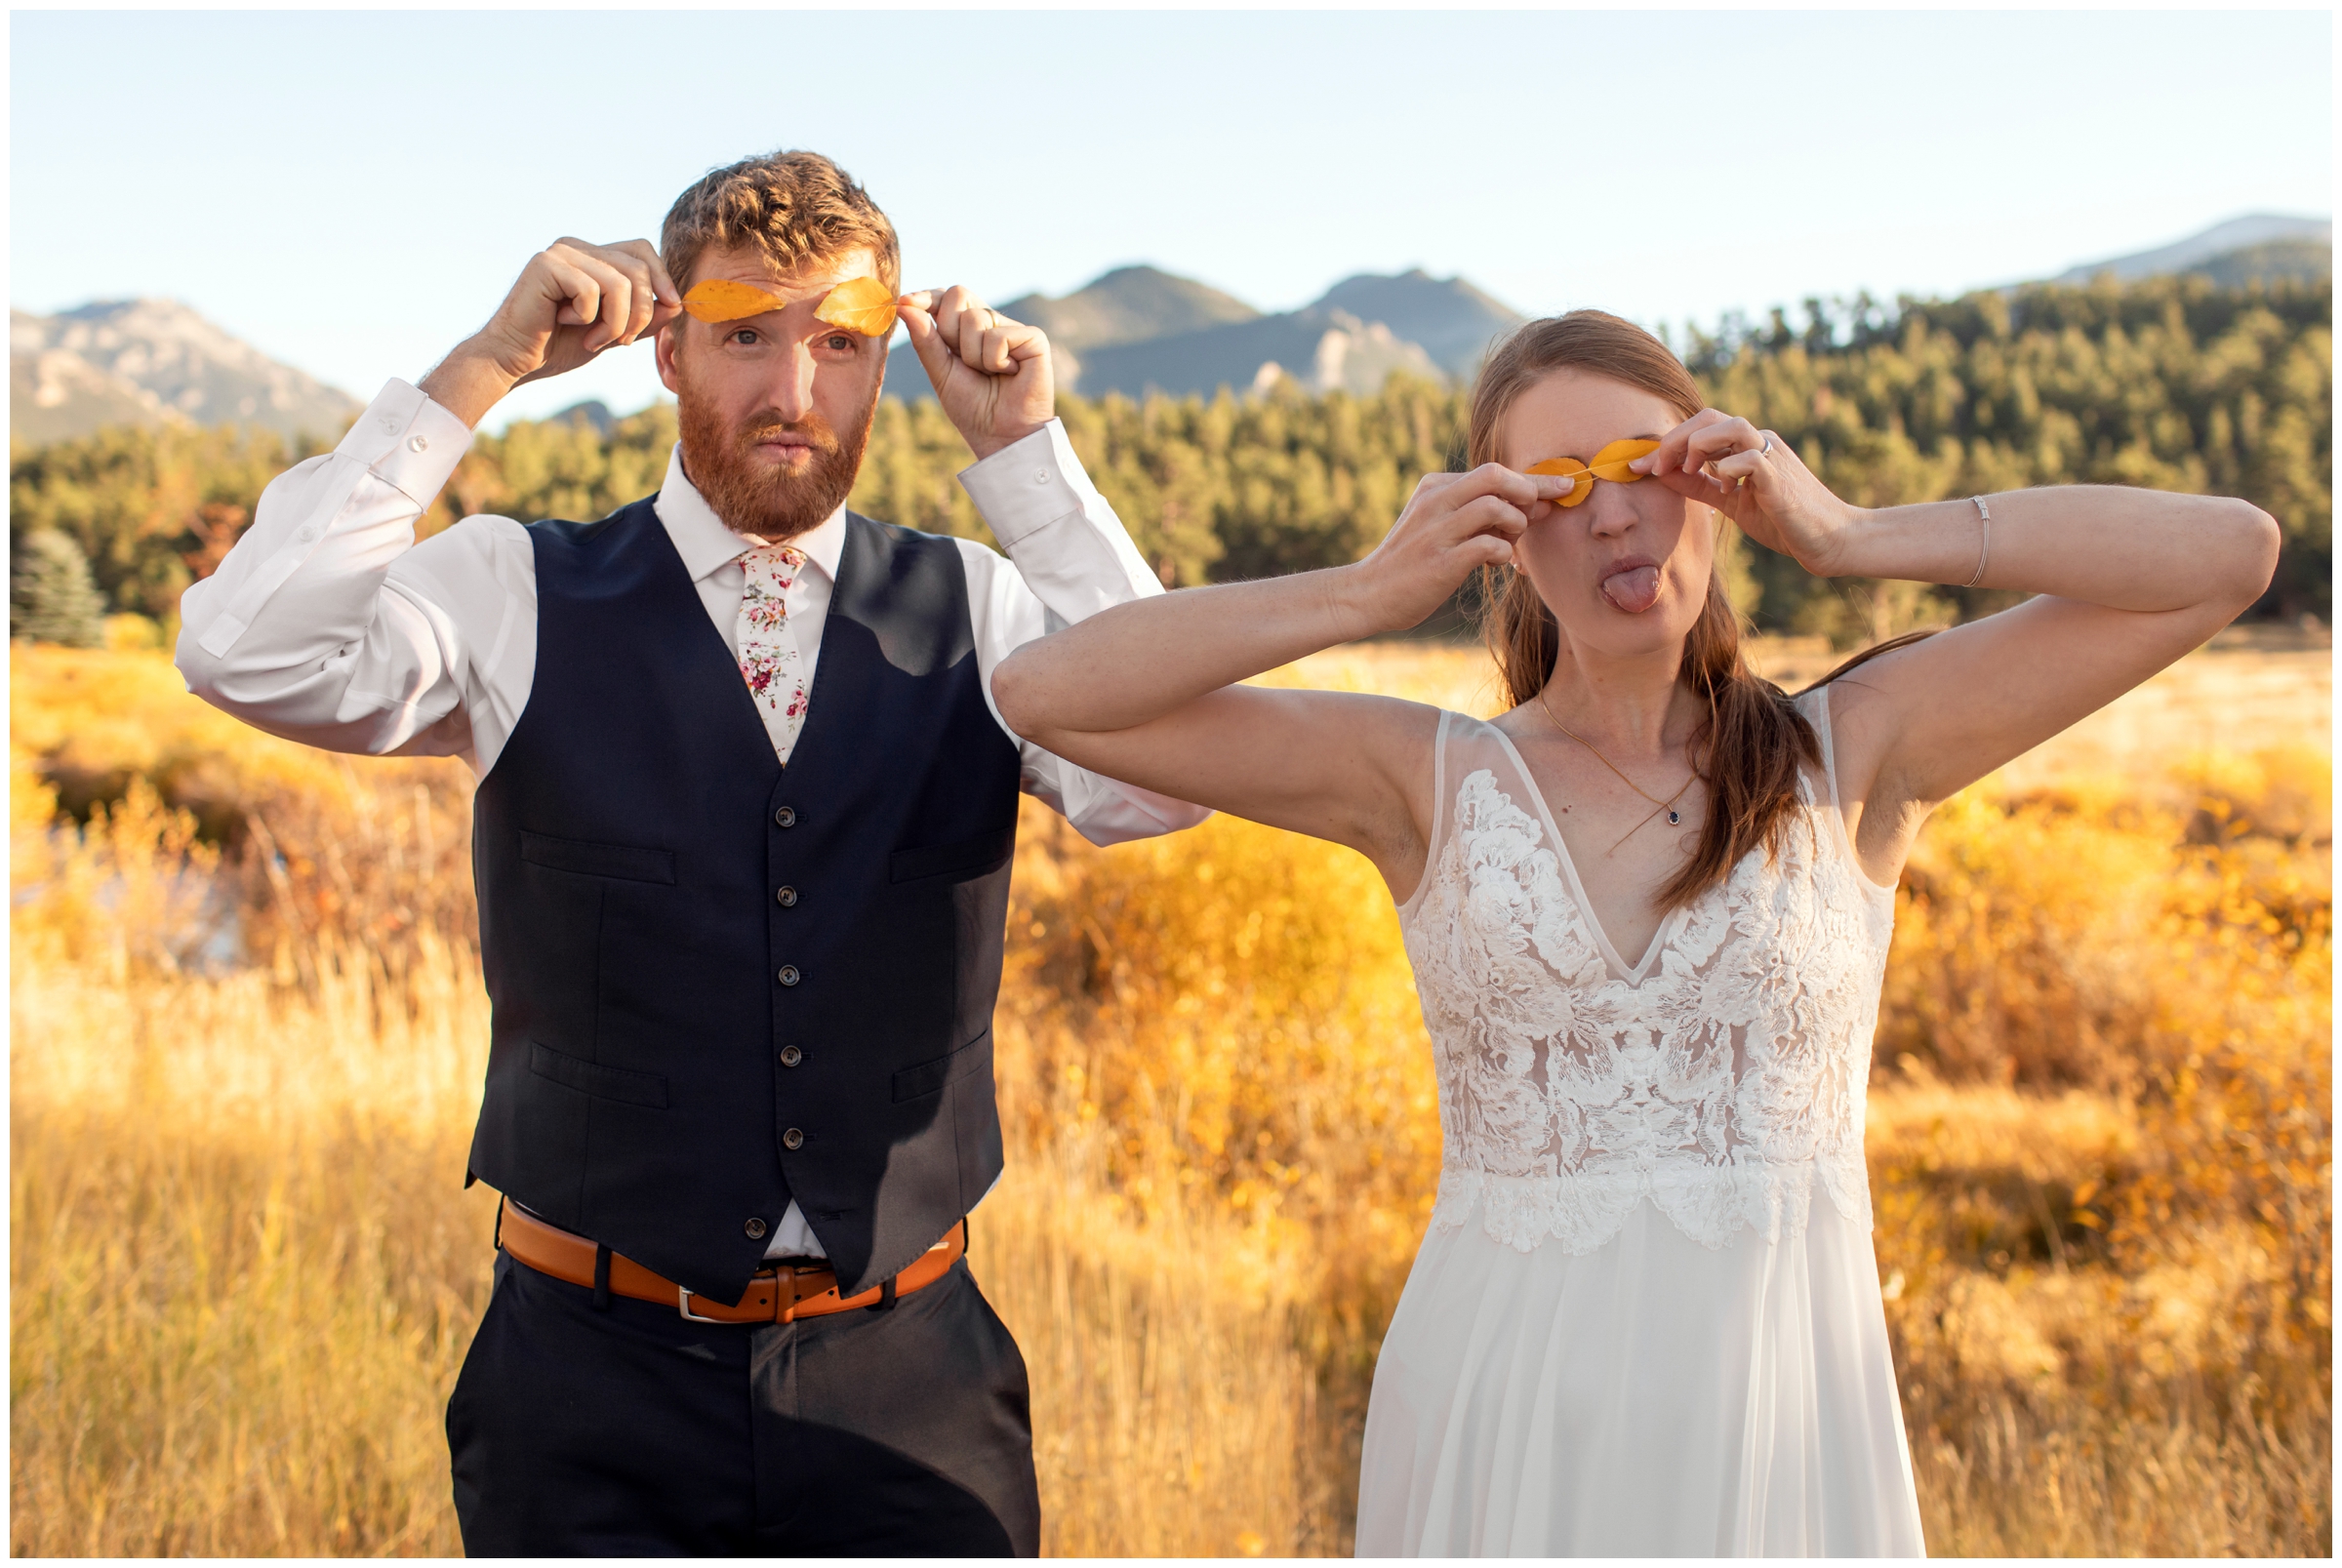 funny wedding photos in the Colorado mountains